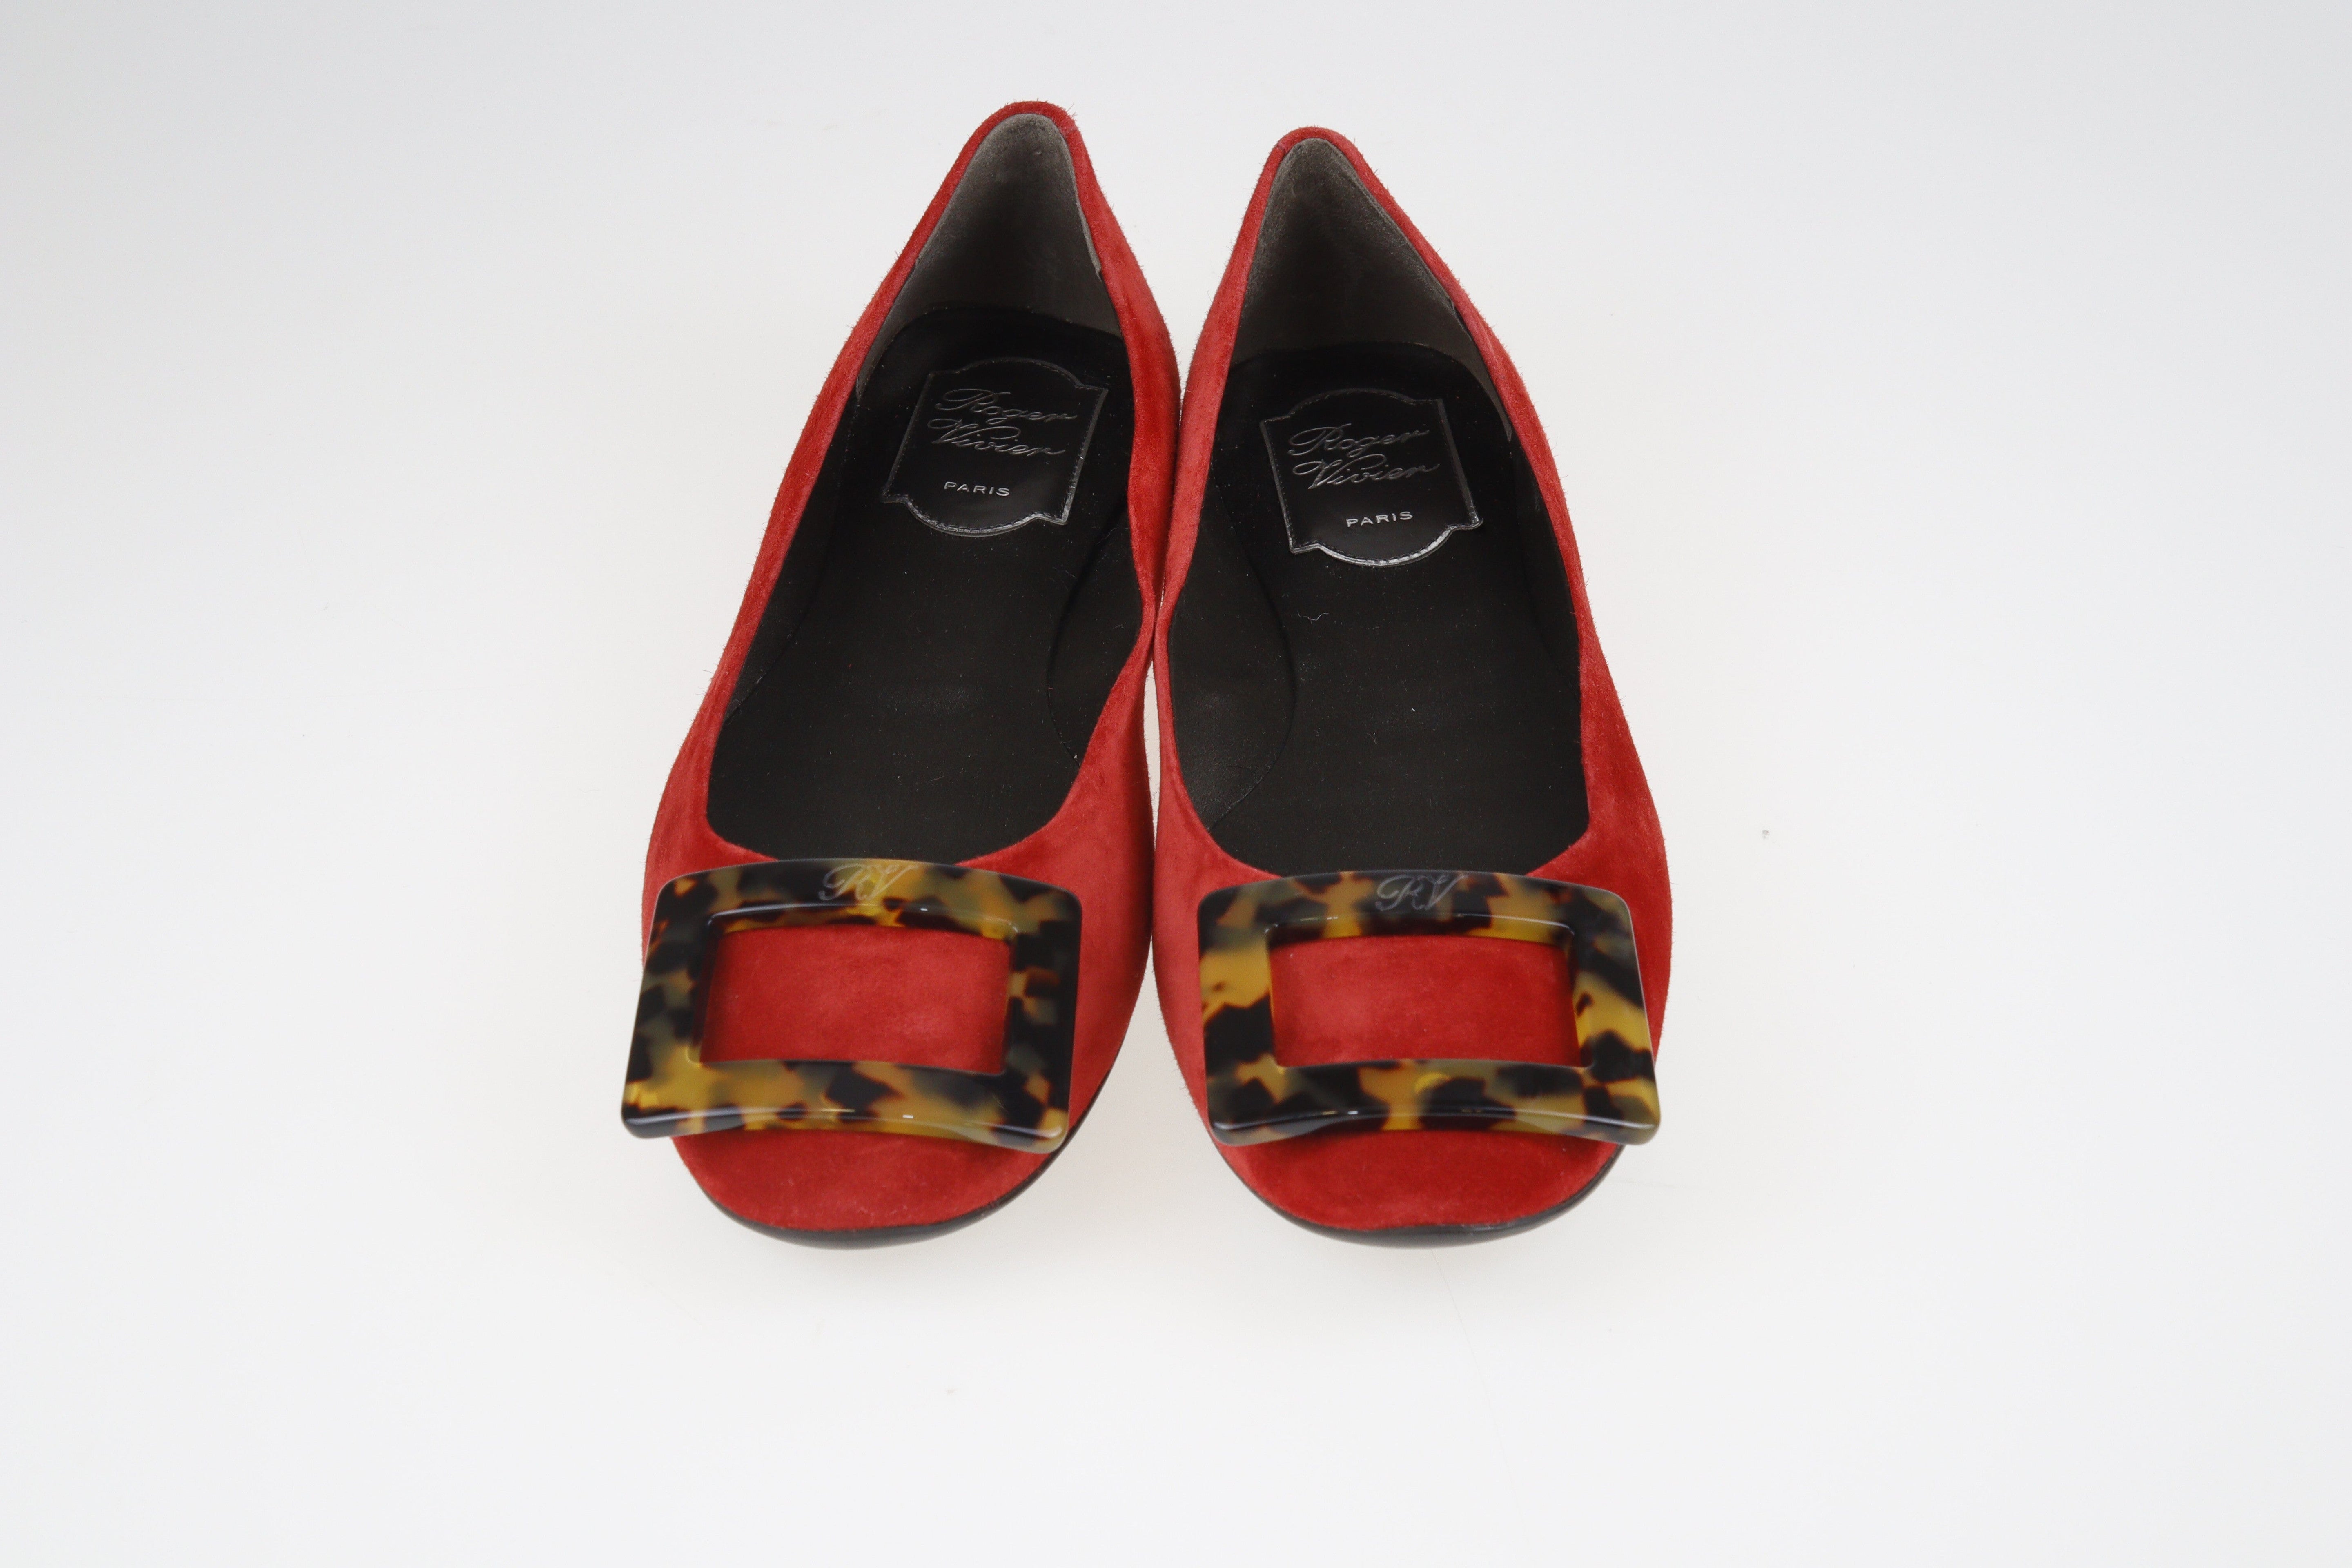 Red Tortoiseshell Belle Ballet Flats Shoes Roger Vivier 